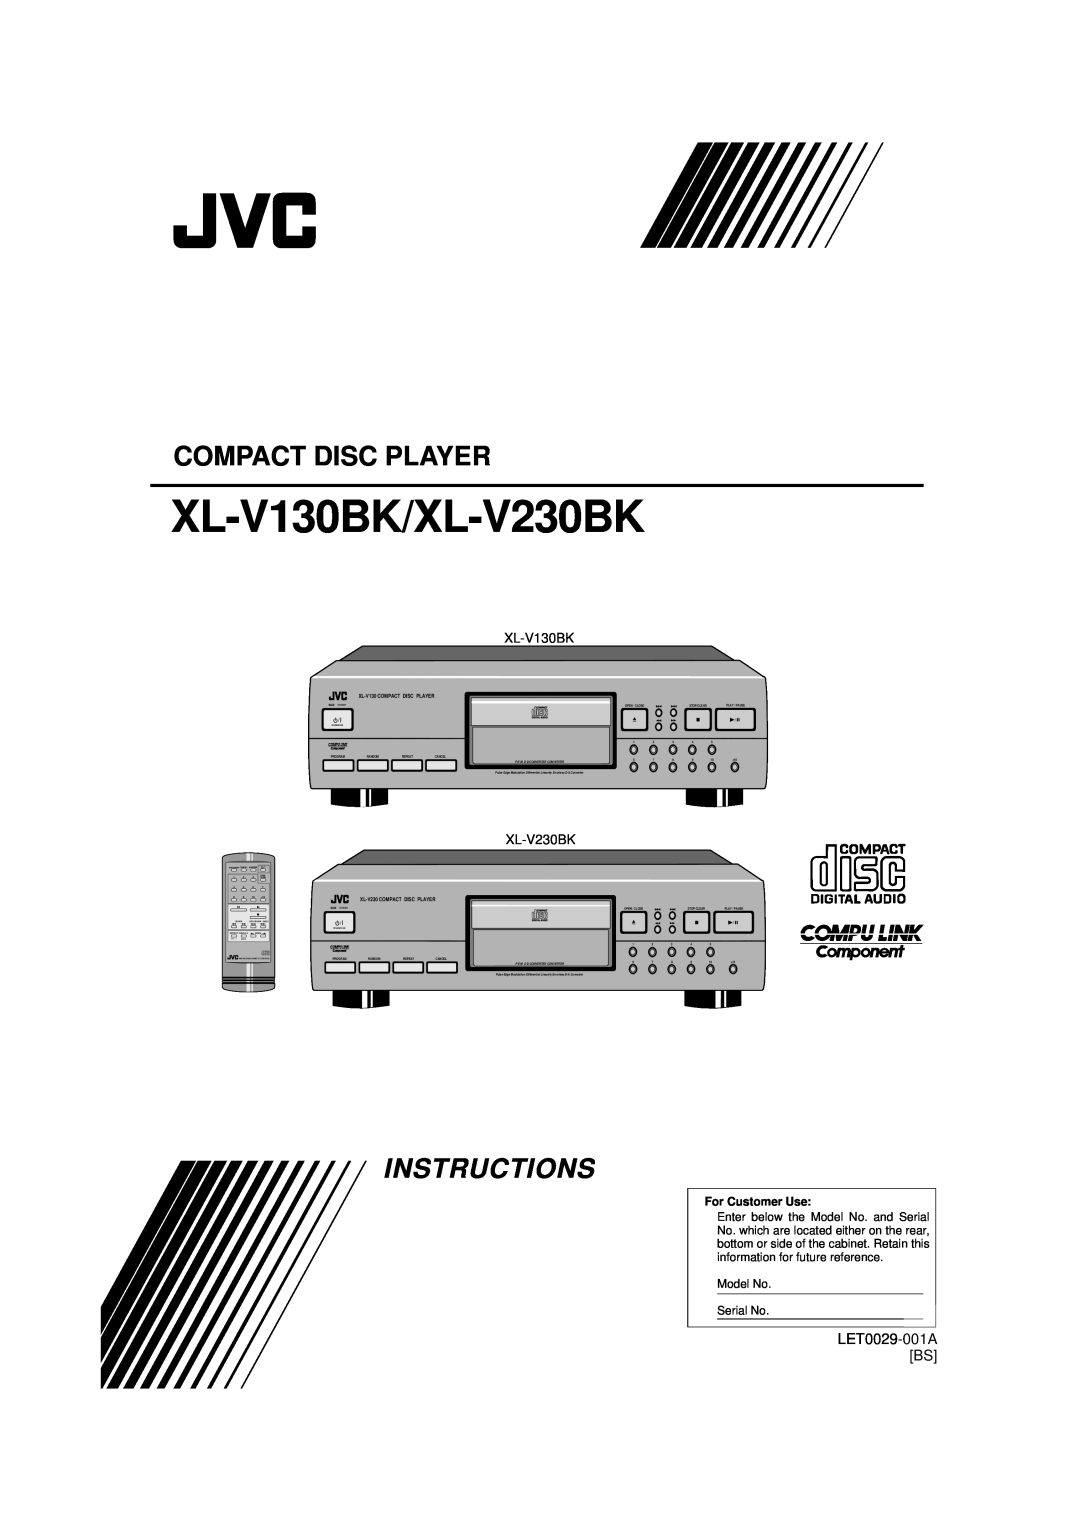 JVC manual Compact Disc Player, XL-V130BK/XL-V230BK, Instructions, LET0029-001ABS, XL-V130COMPACT DISC PLAYER 